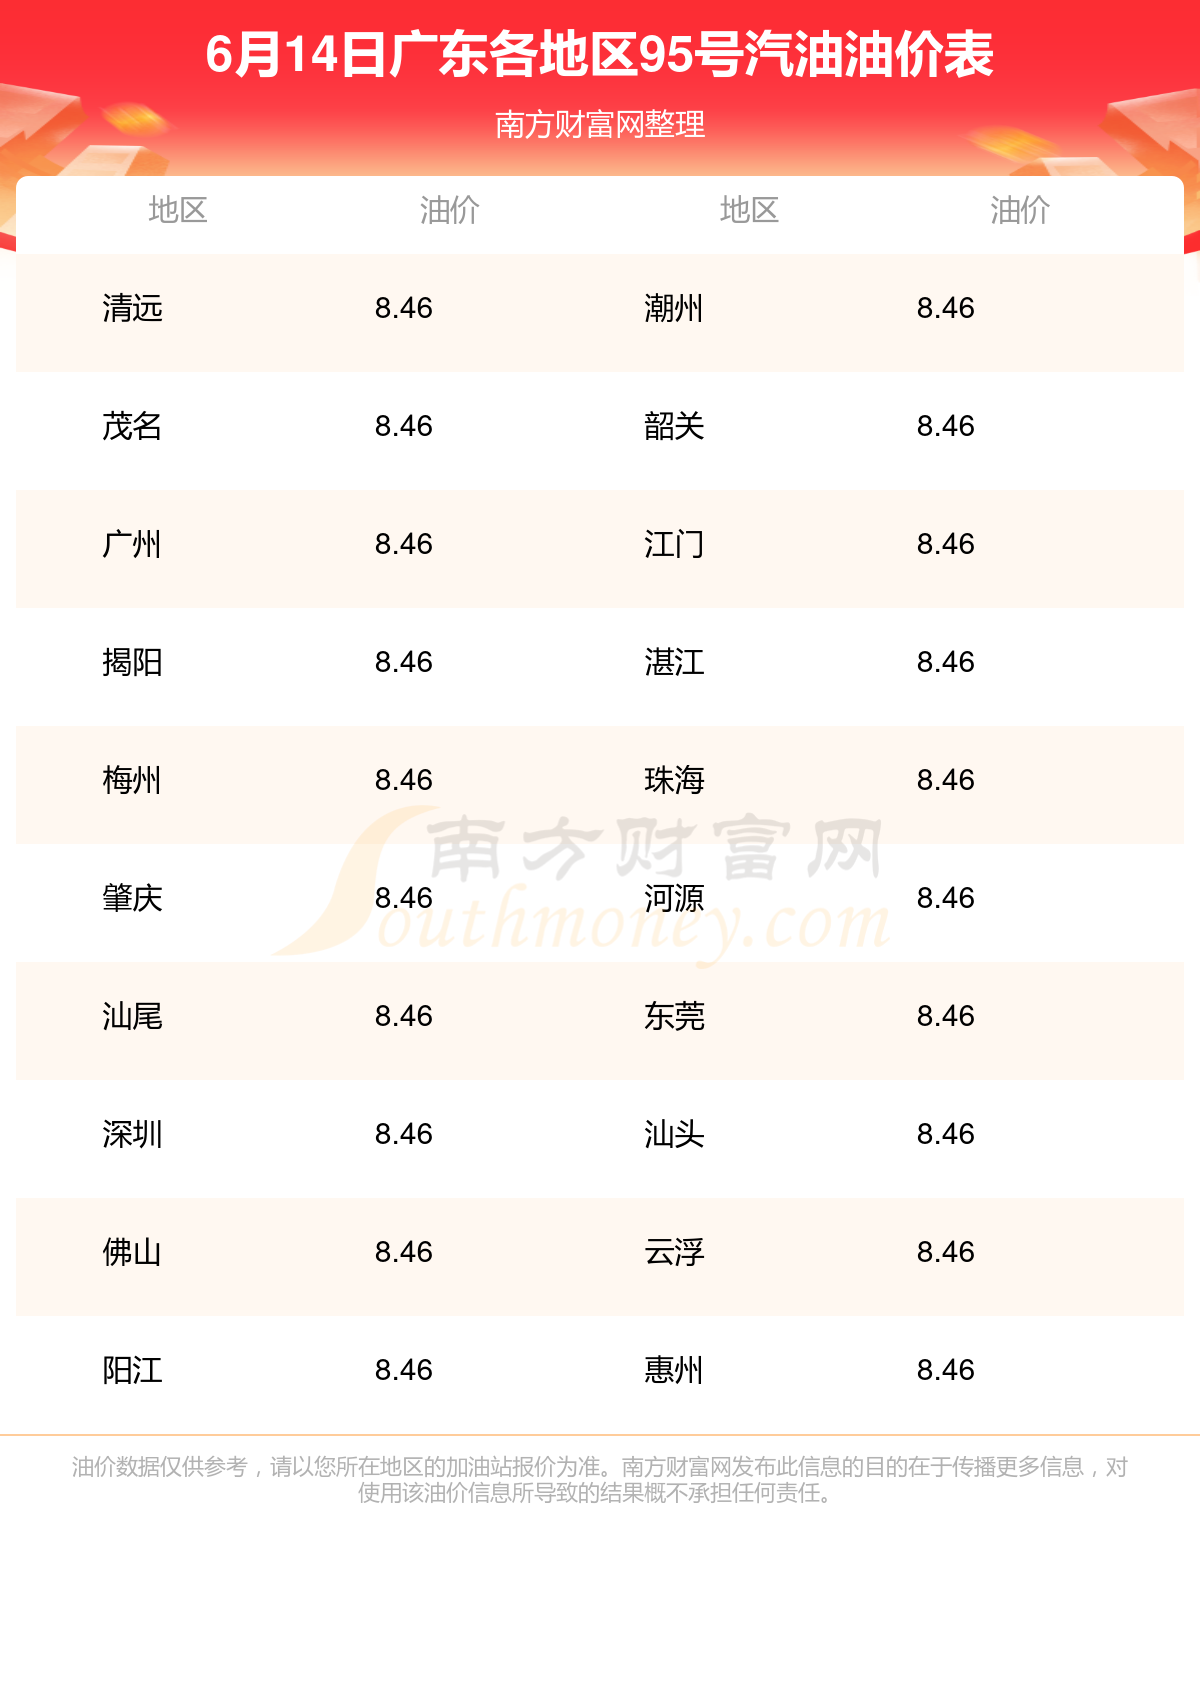 今日油价查询:6月14日广东95号汽油油价多少钱一升?